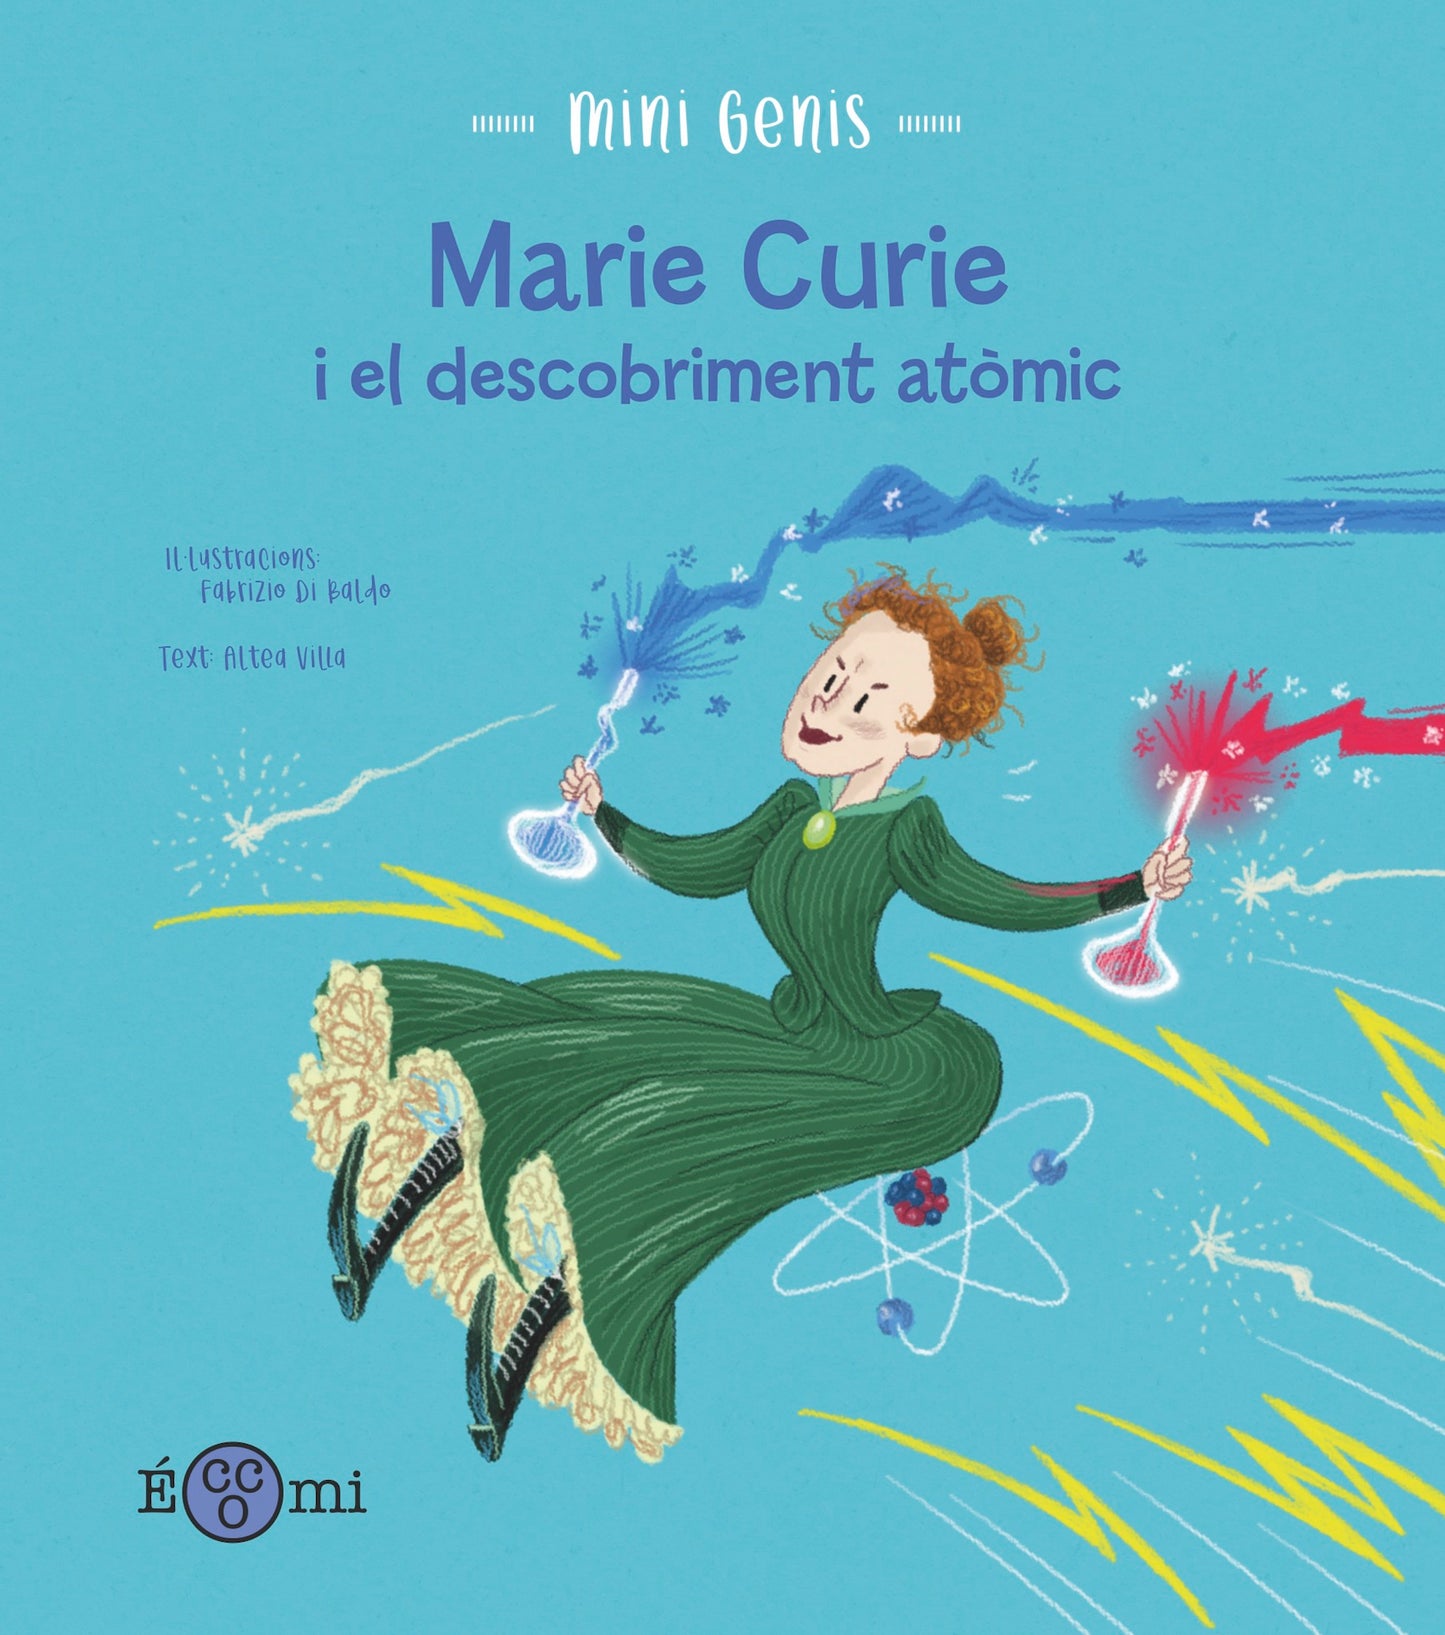 Marie Curie y el descubrimiento atómico